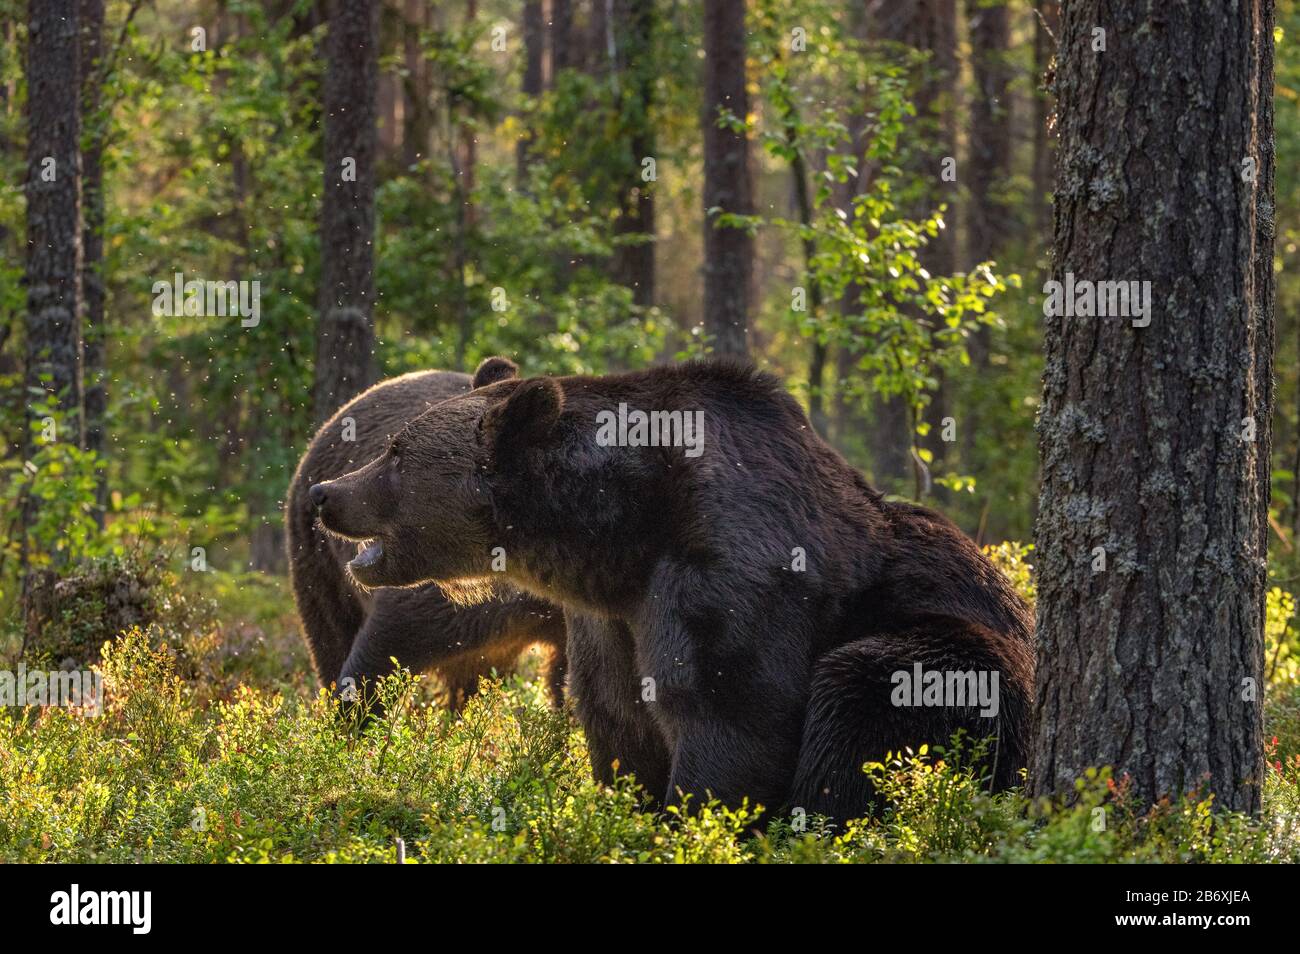 Ours bruns adultes dans la forêt de pins. Nom scientifique: Ursus arctos. Habitat naturel. Saison d'automne. Banque D'Images